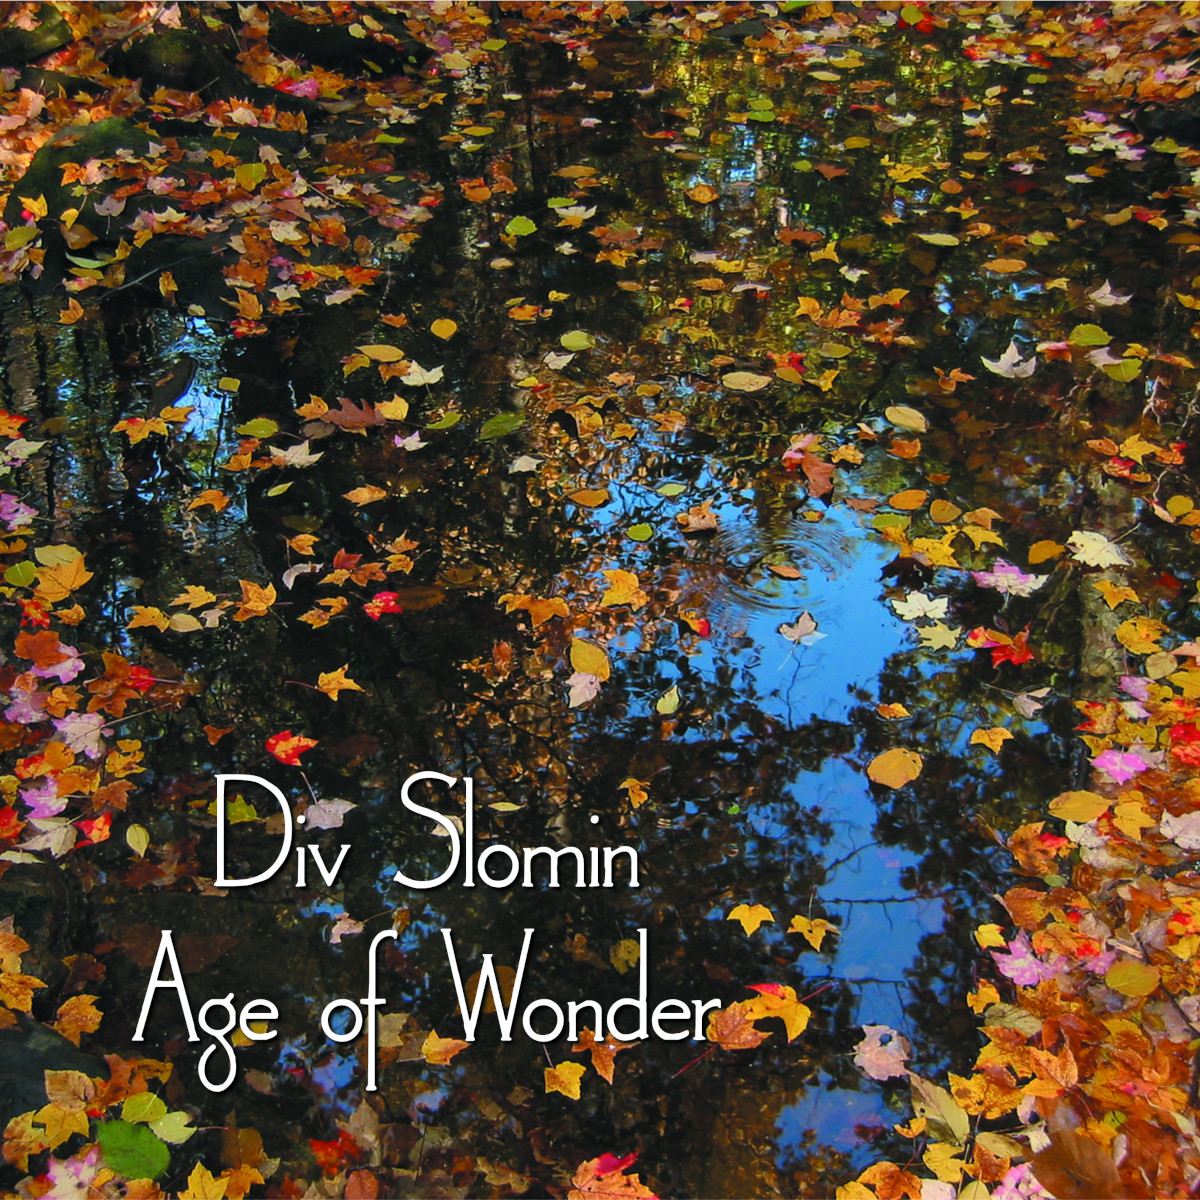 Div Slomin - Age of Wonder